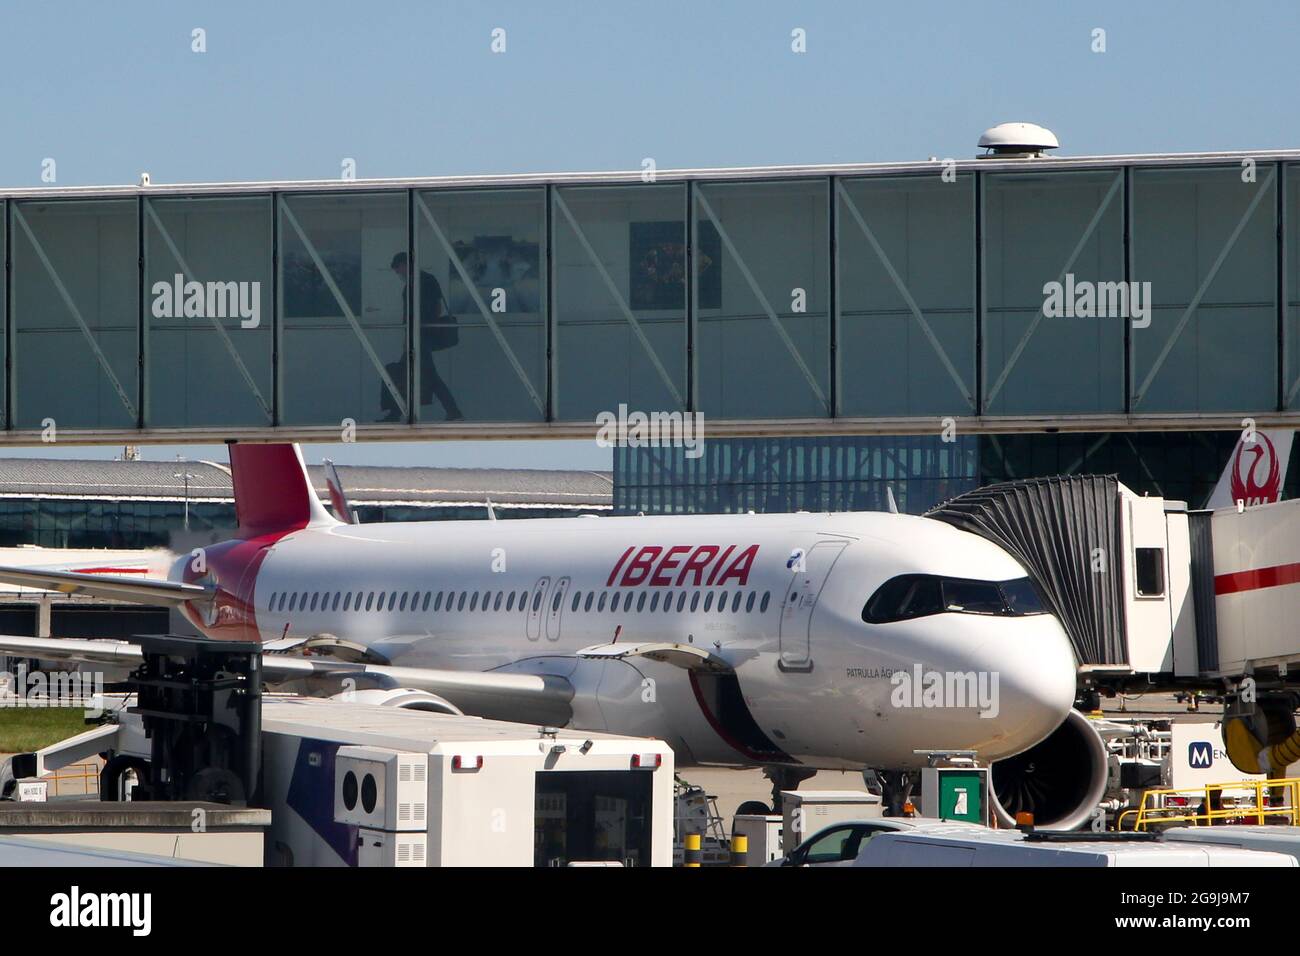 Una Iberia Airlines parcheggiata presso un cancello all'aeroporto Heathrow di Londra. Foto Stock